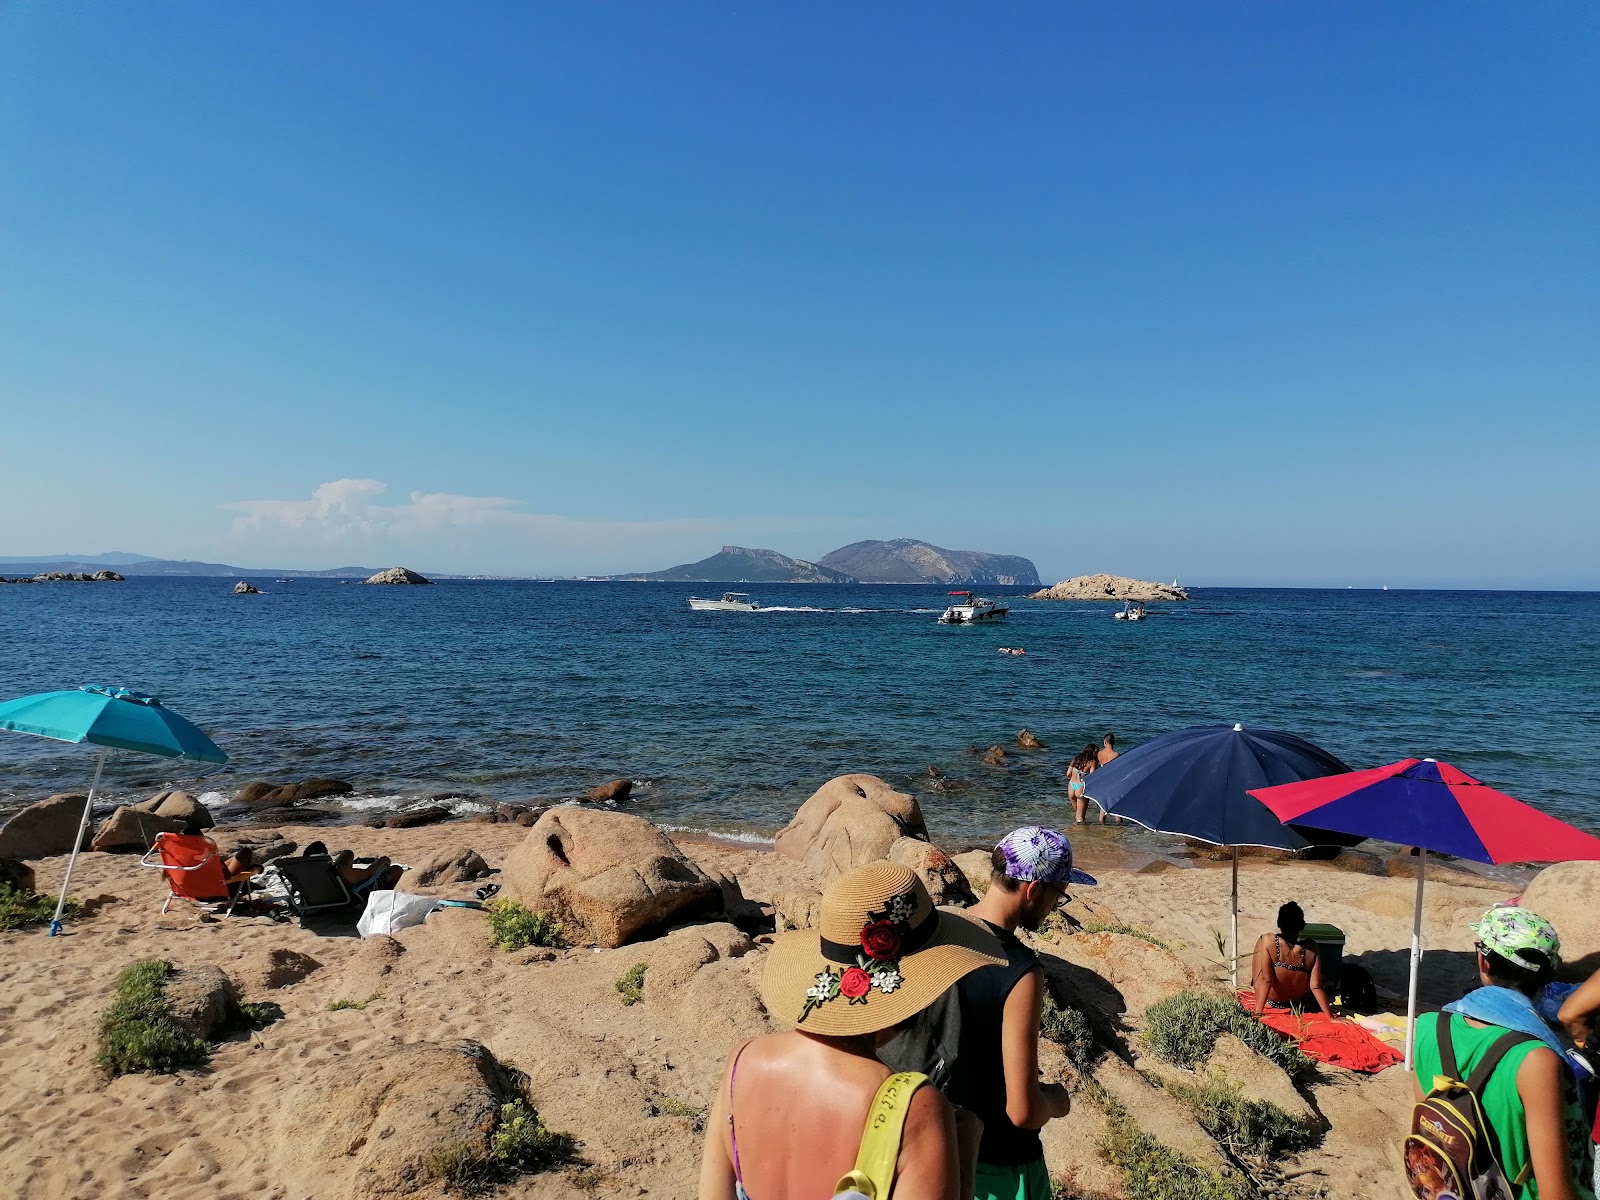 Photo of Spiaggia di Capo Ceraso located in natural area